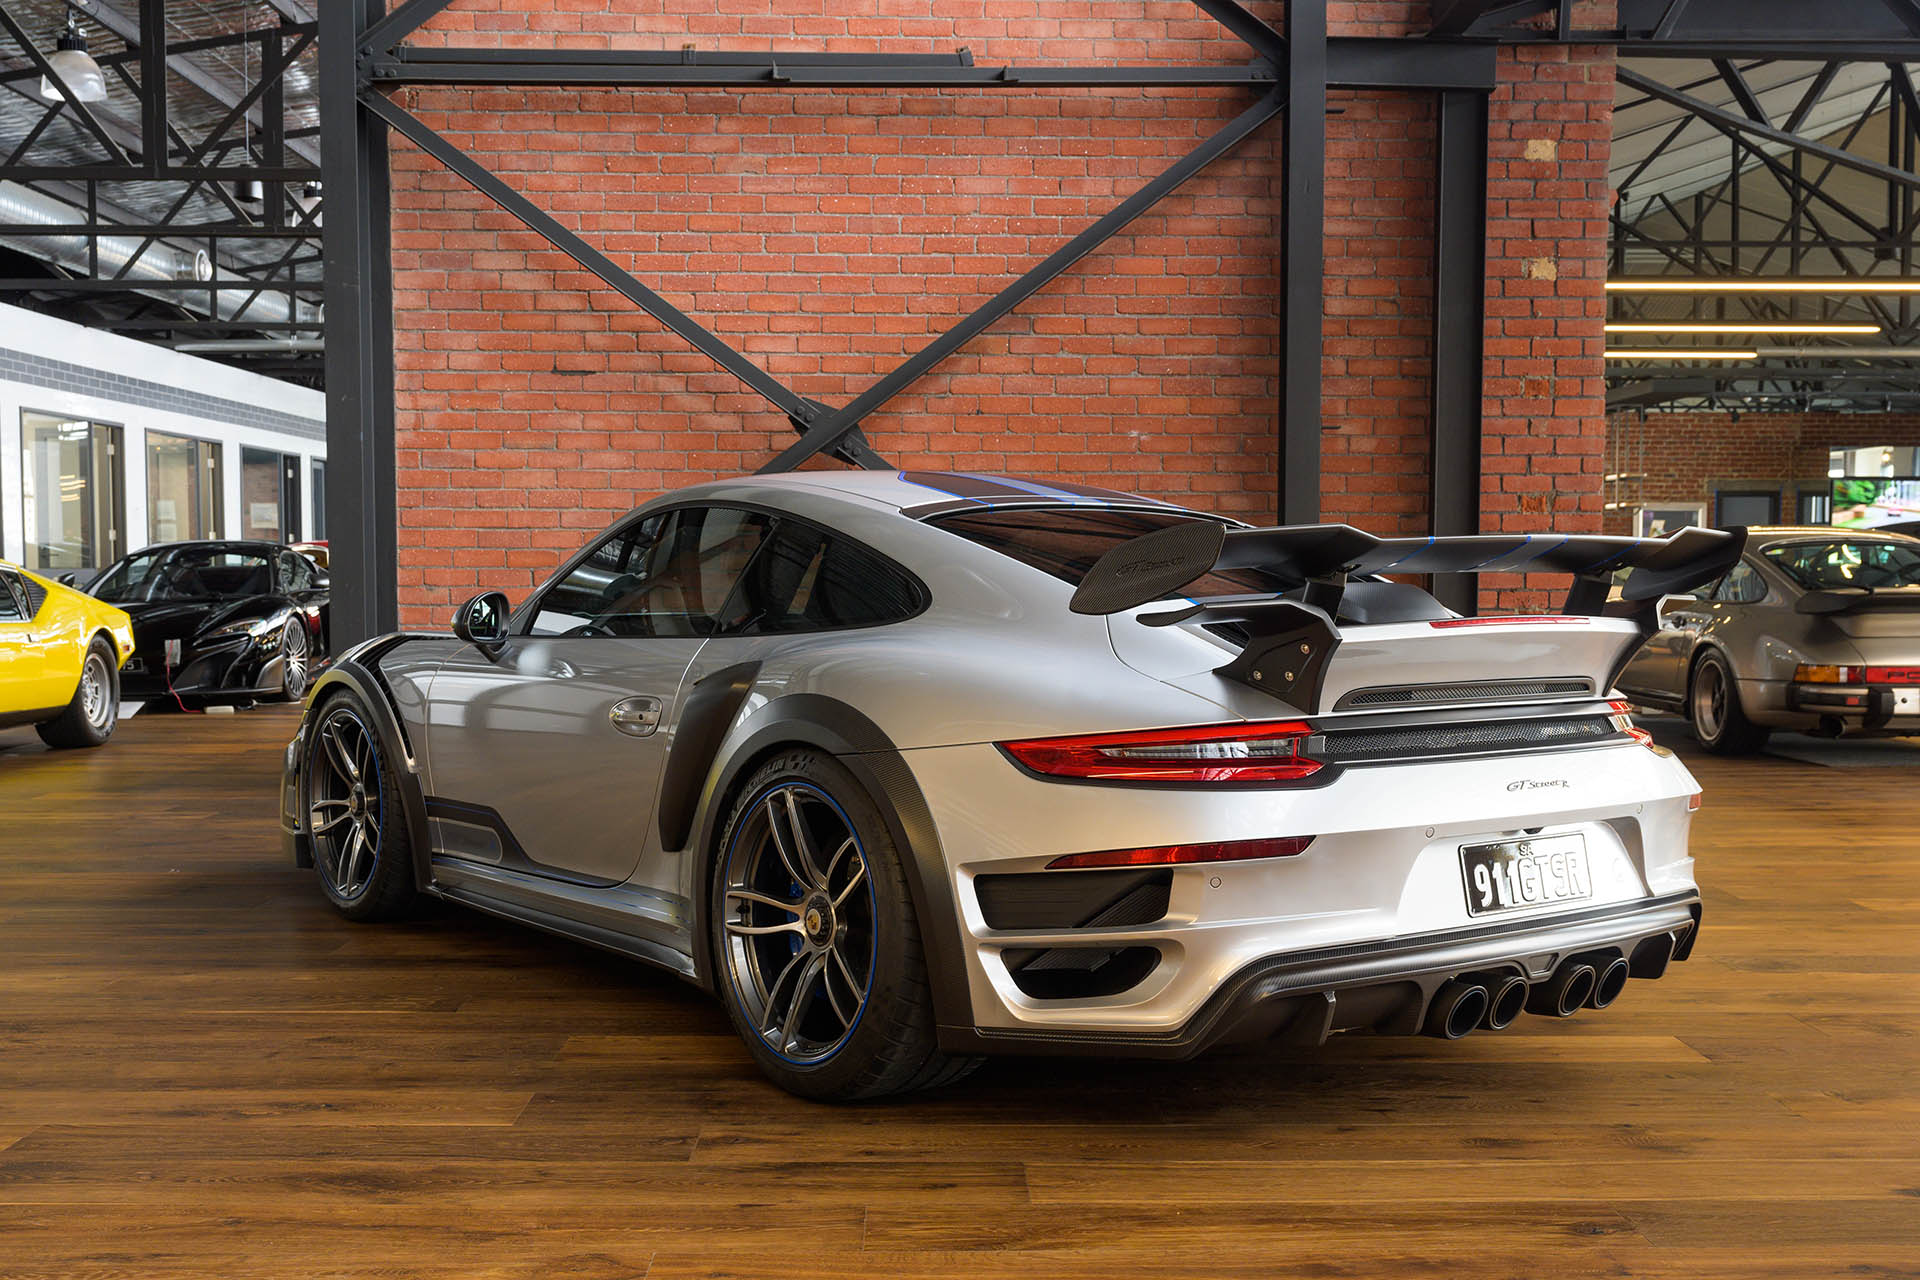 Porsche-Techart-GT-street-r-silver-23.jpg